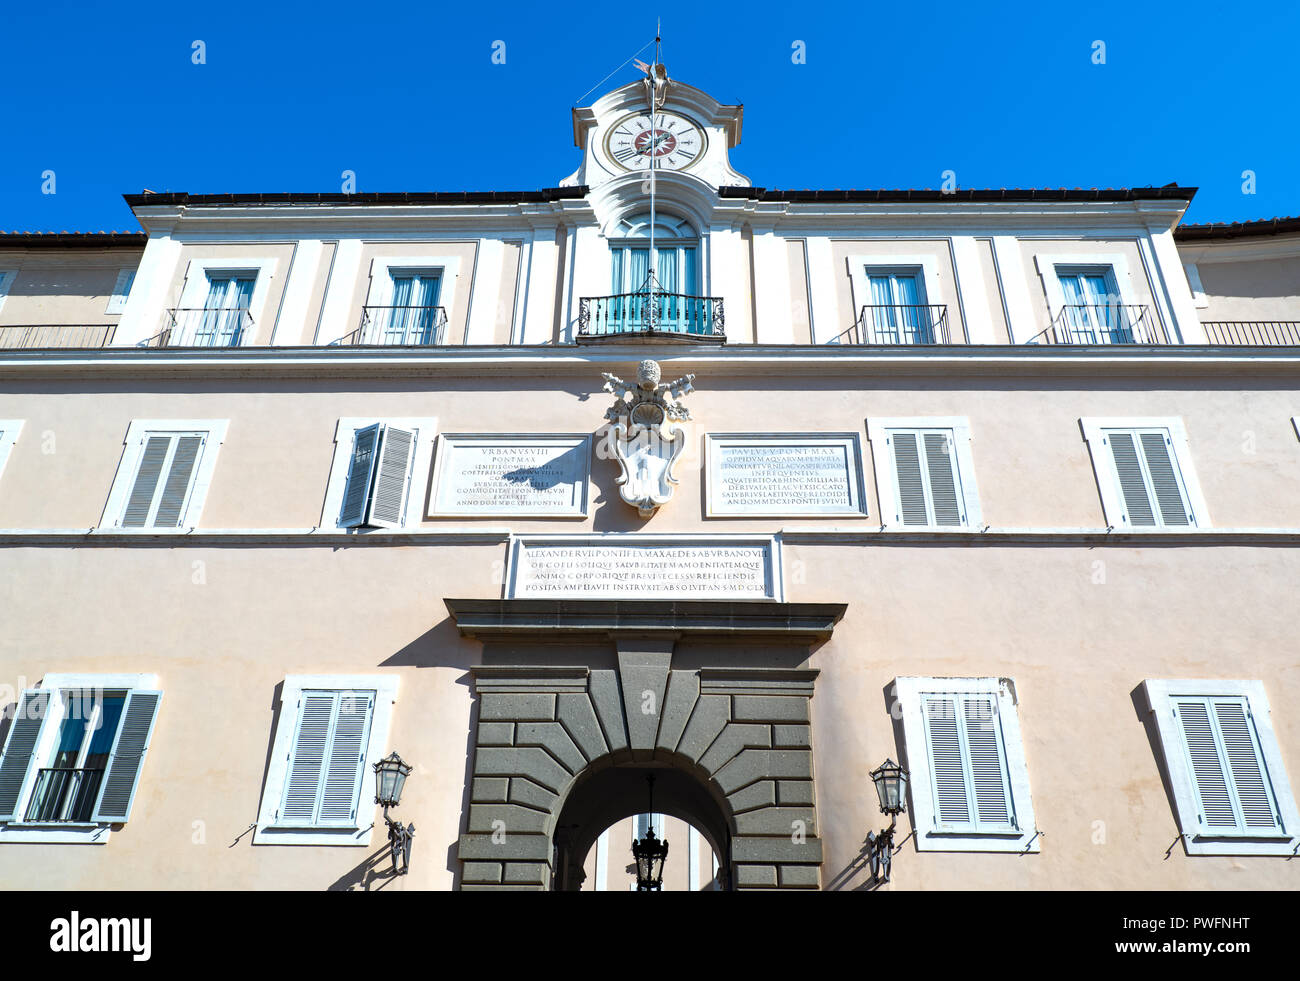 Palermo, Italien, 21. April 2017: Die Hauptfassade des Apostolischen Palastes, der Sommerresidenz der Päpste Stockfoto